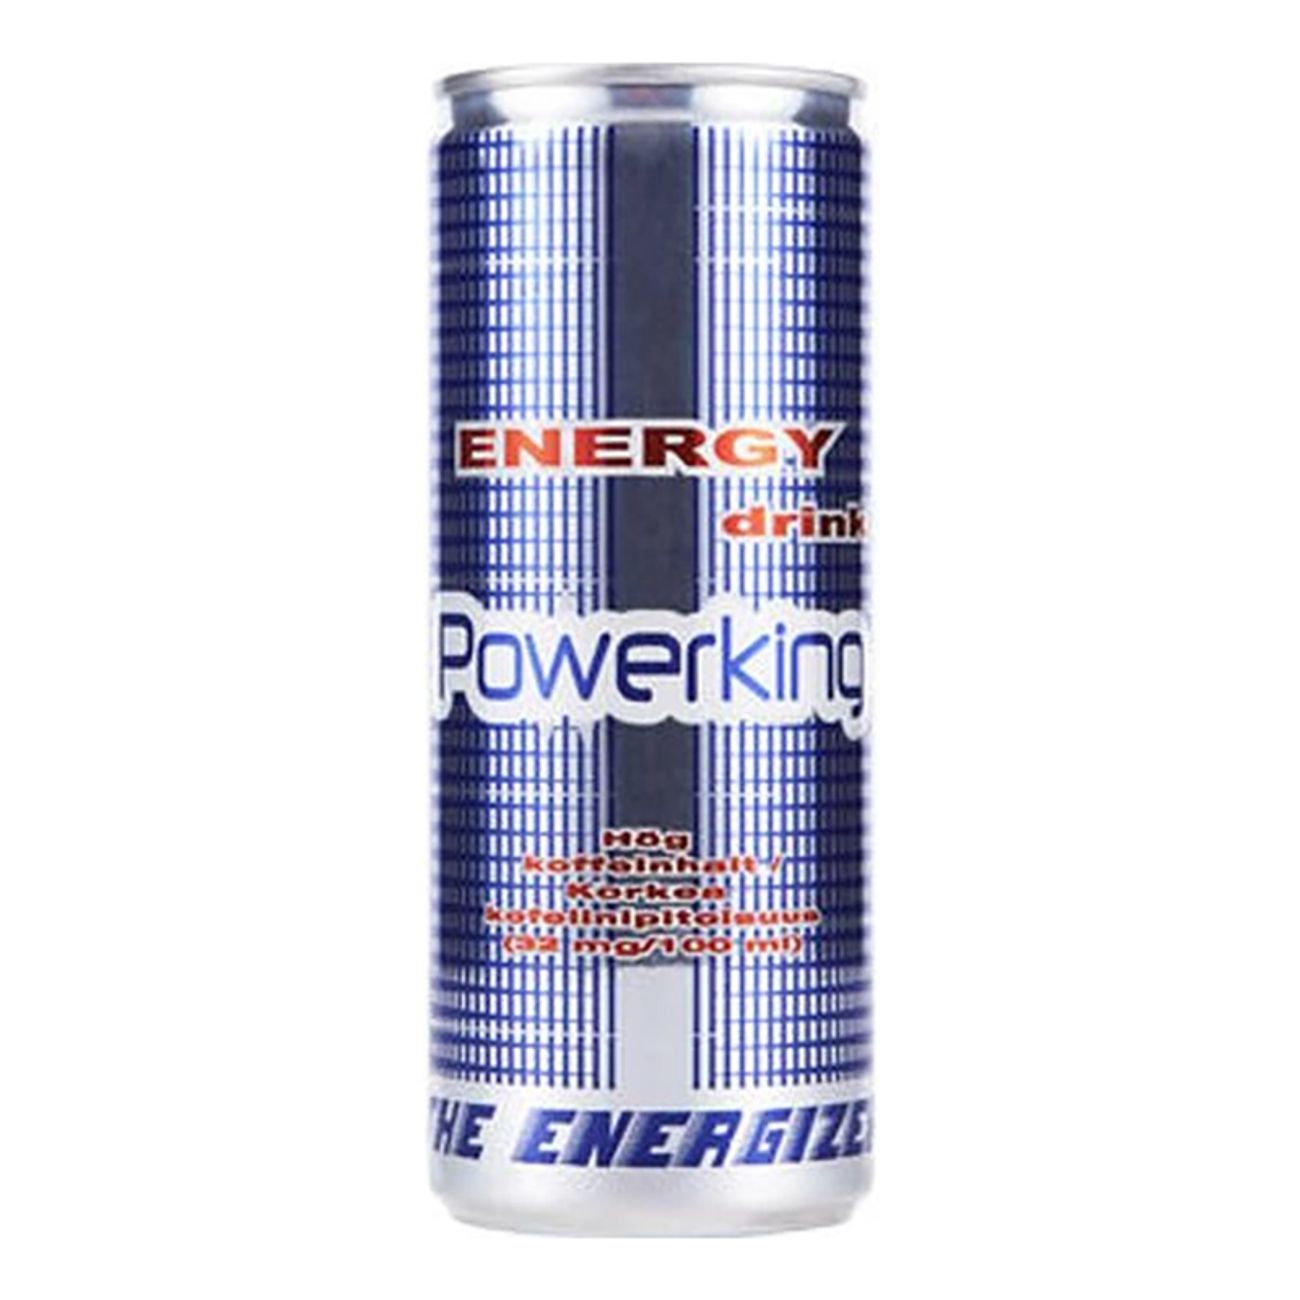 powerking-energidryck-2